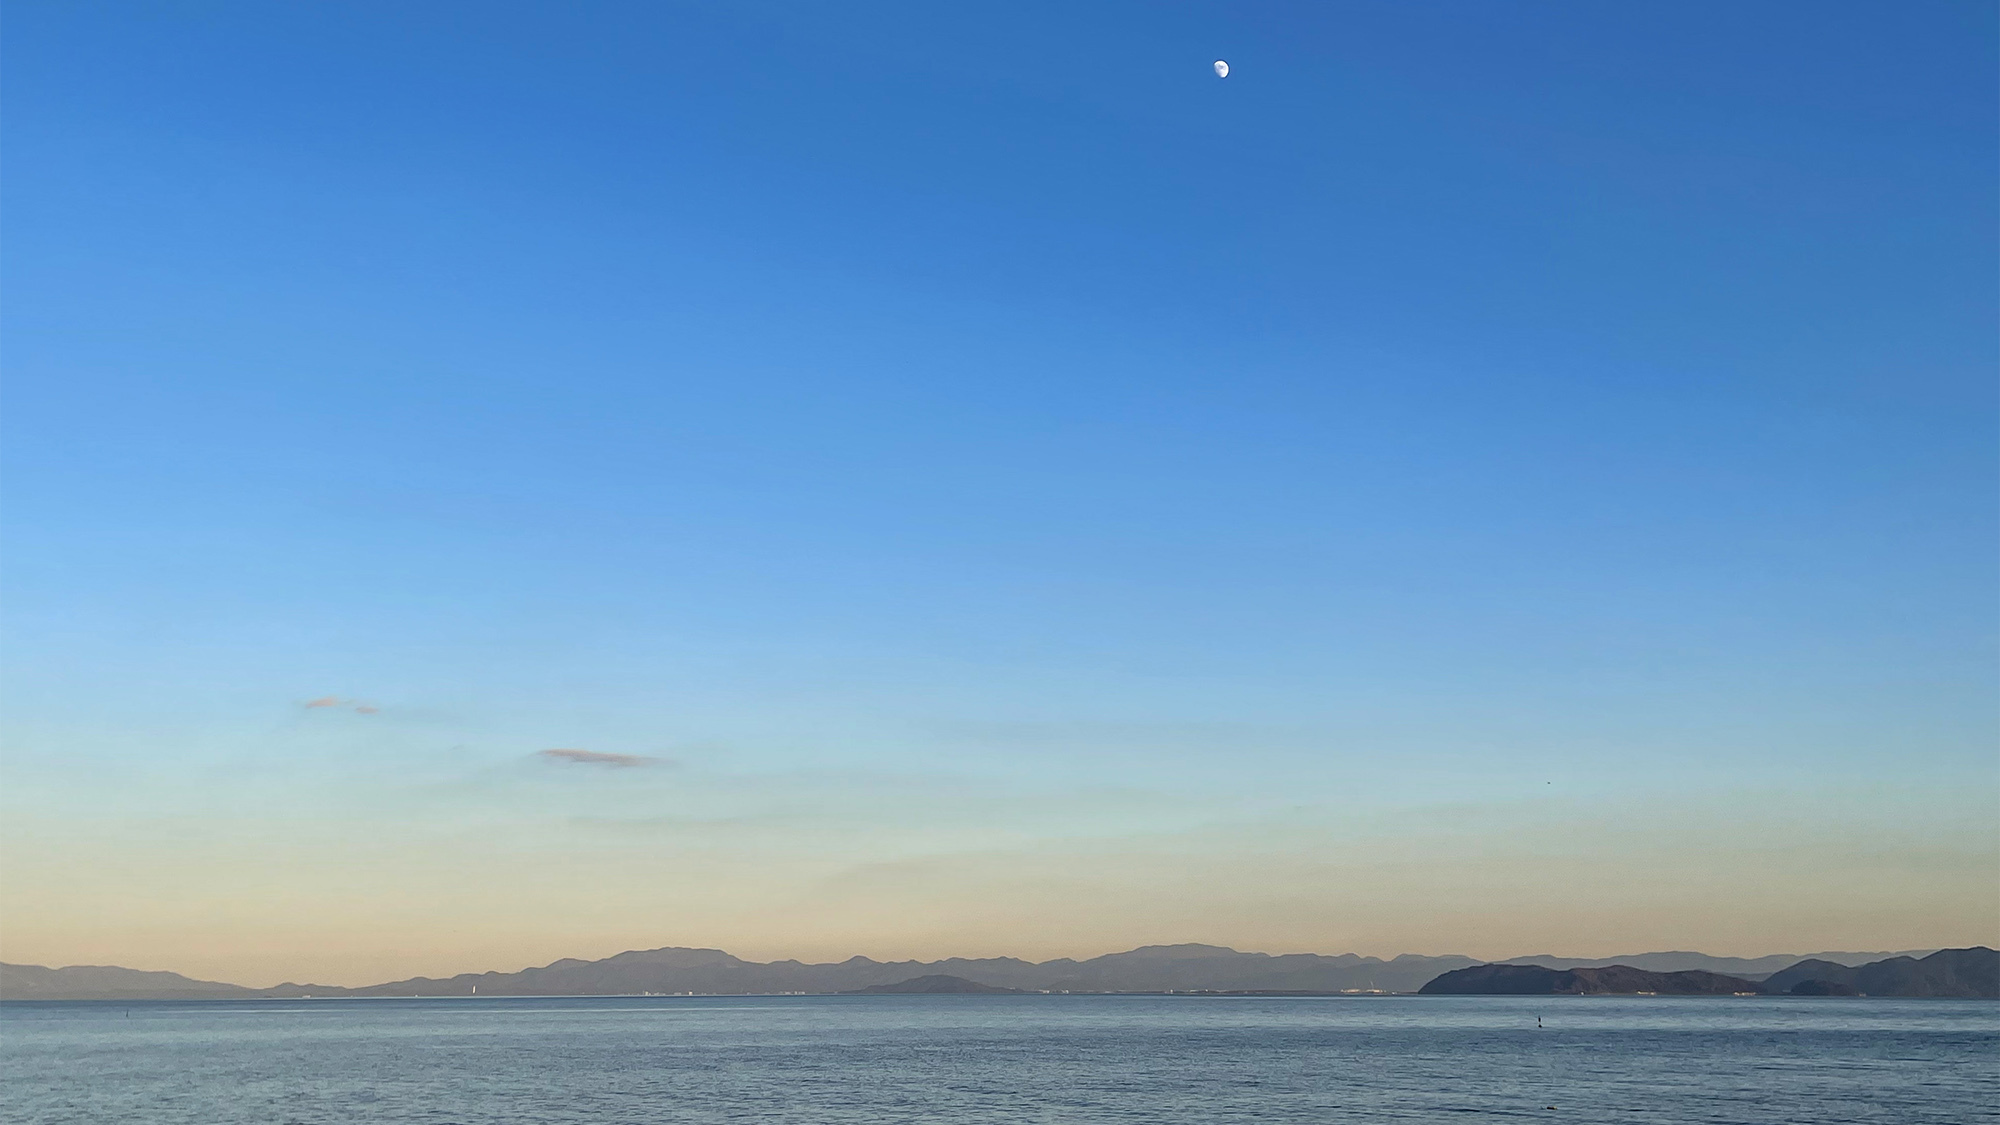 ・夕焼けに染まる琵琶湖は絶景です